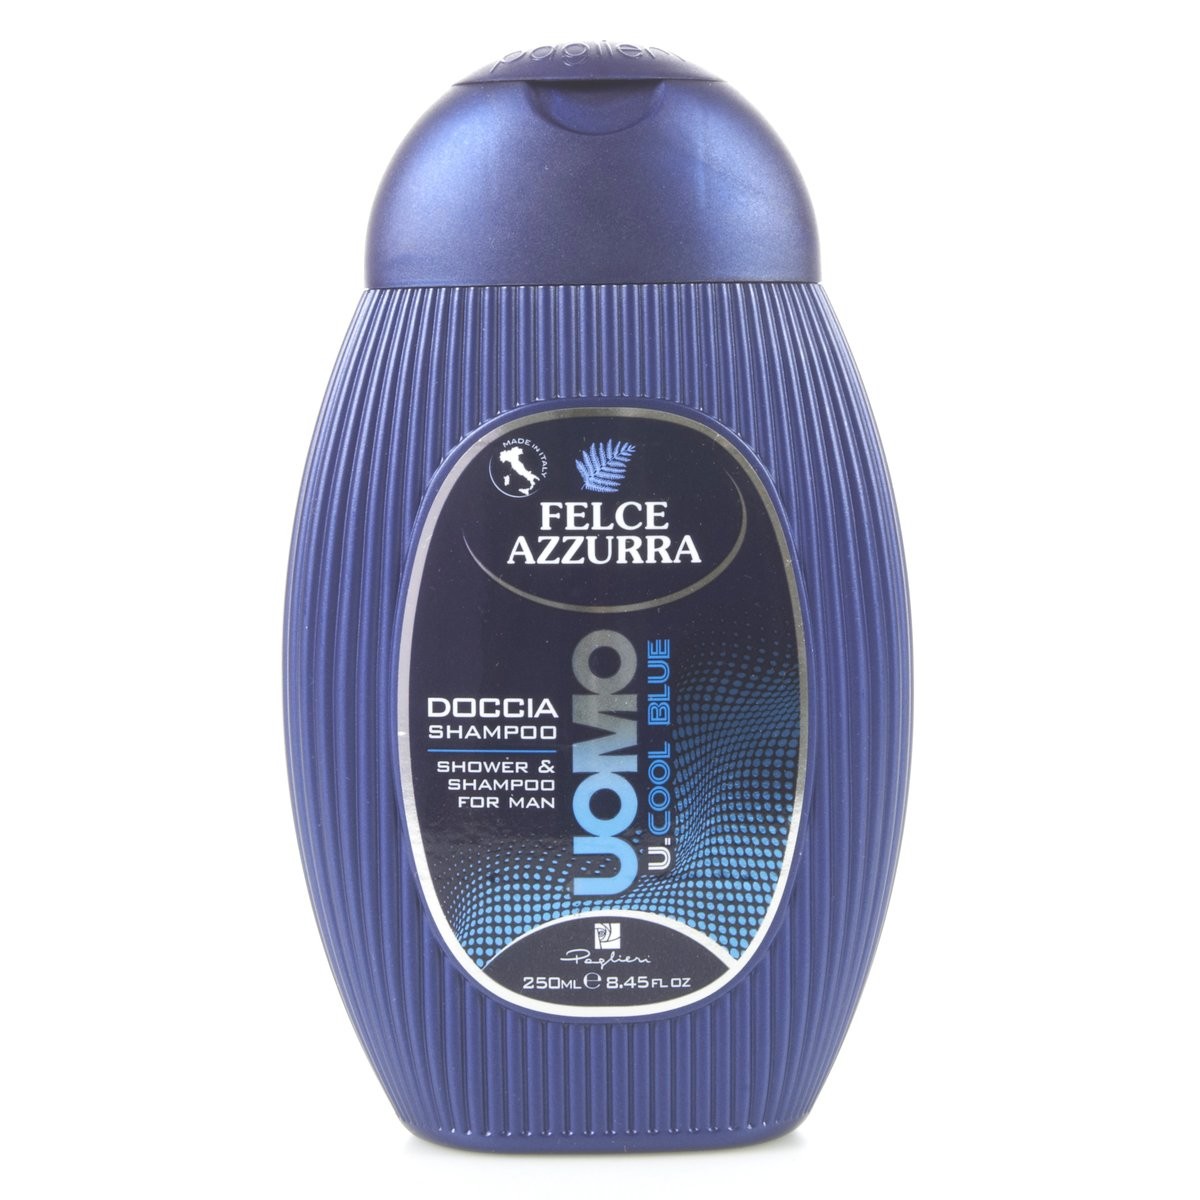 Felce Azzurra Doccia Shampoo For Man